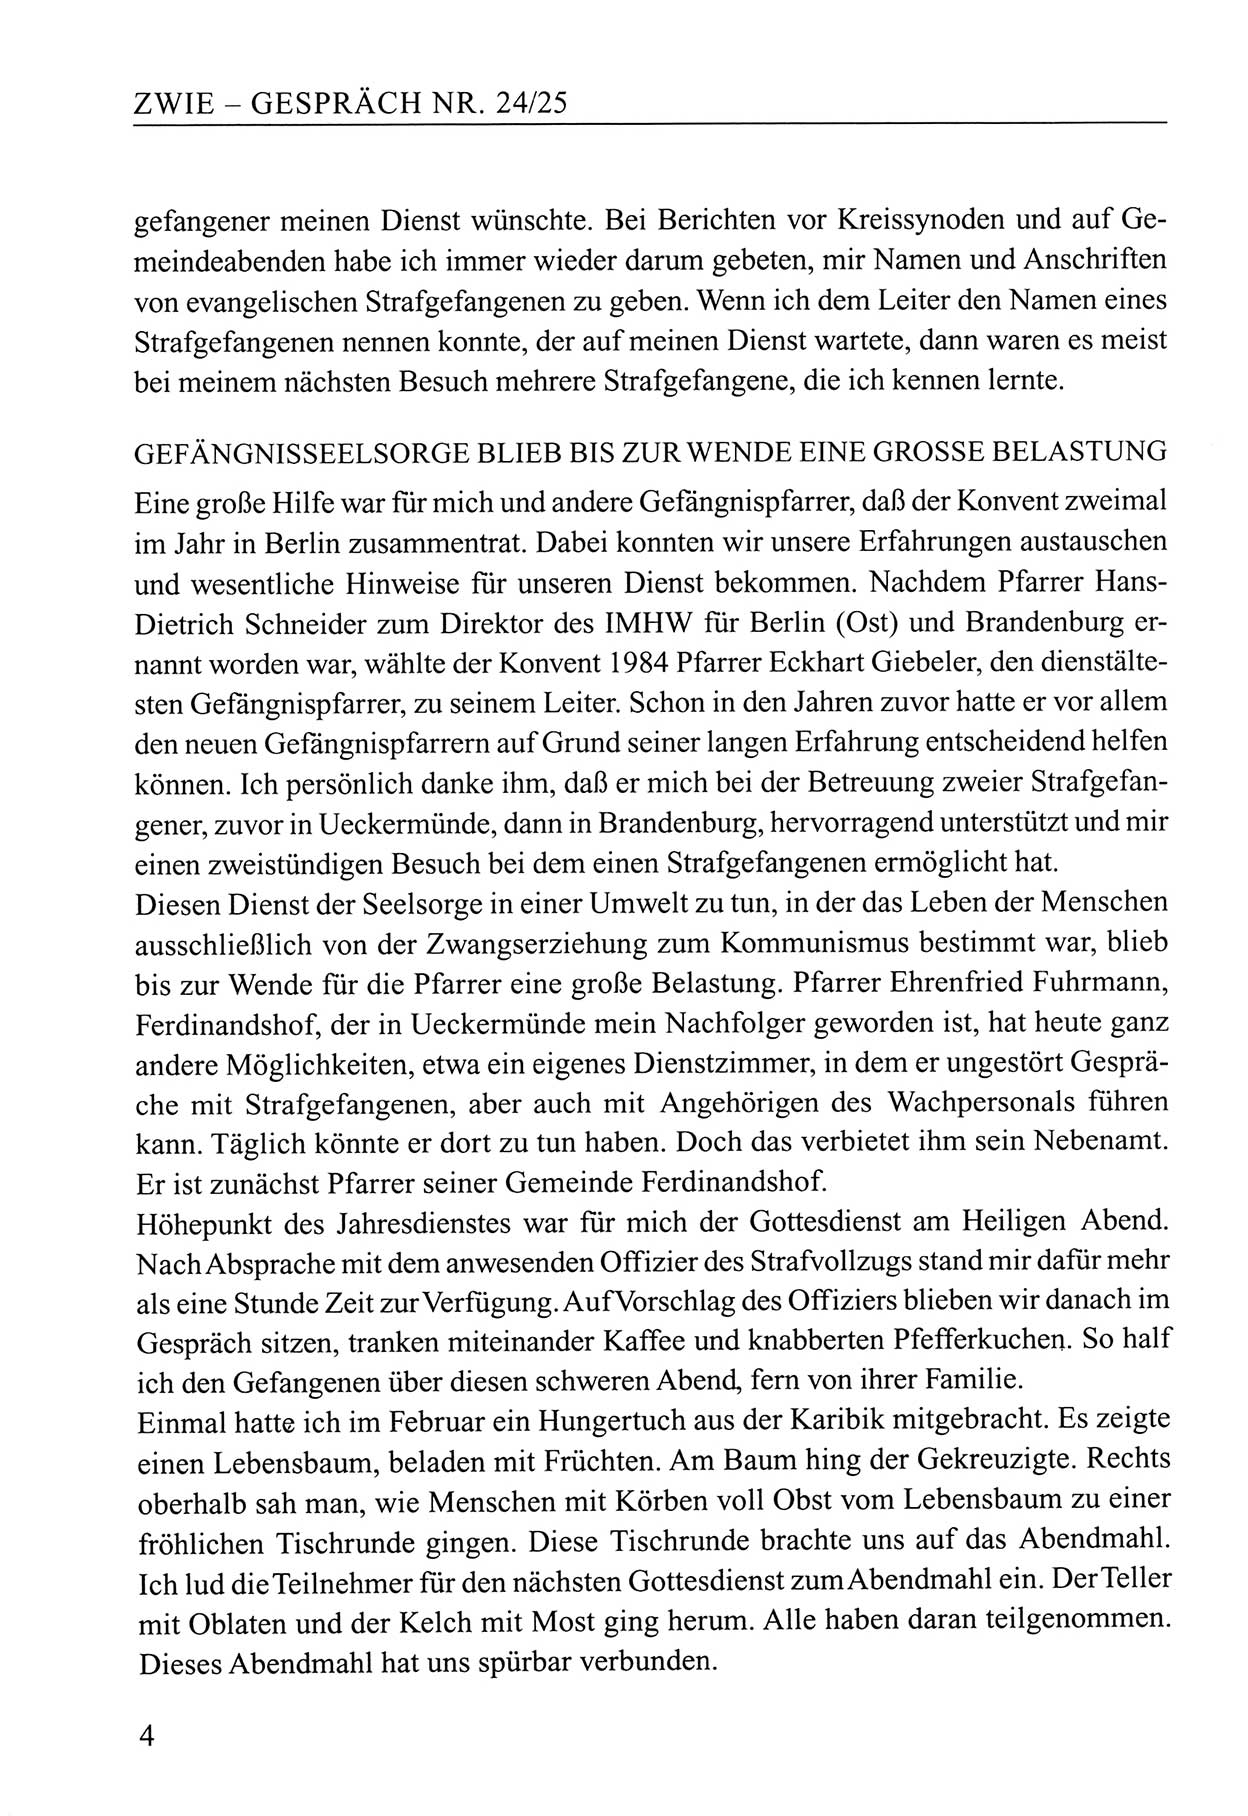 Zwie-Gespräch, Beiträge zum Umgang mit der Staatssicherheits-Vergangenheit [Deutsche Demokratische Republik (DDR)], Ausgabe Nr. 24/25, Berlin 1994, Seite 4 (Zwie-Gespr. Ausg. 24/25 1994, S. 4)